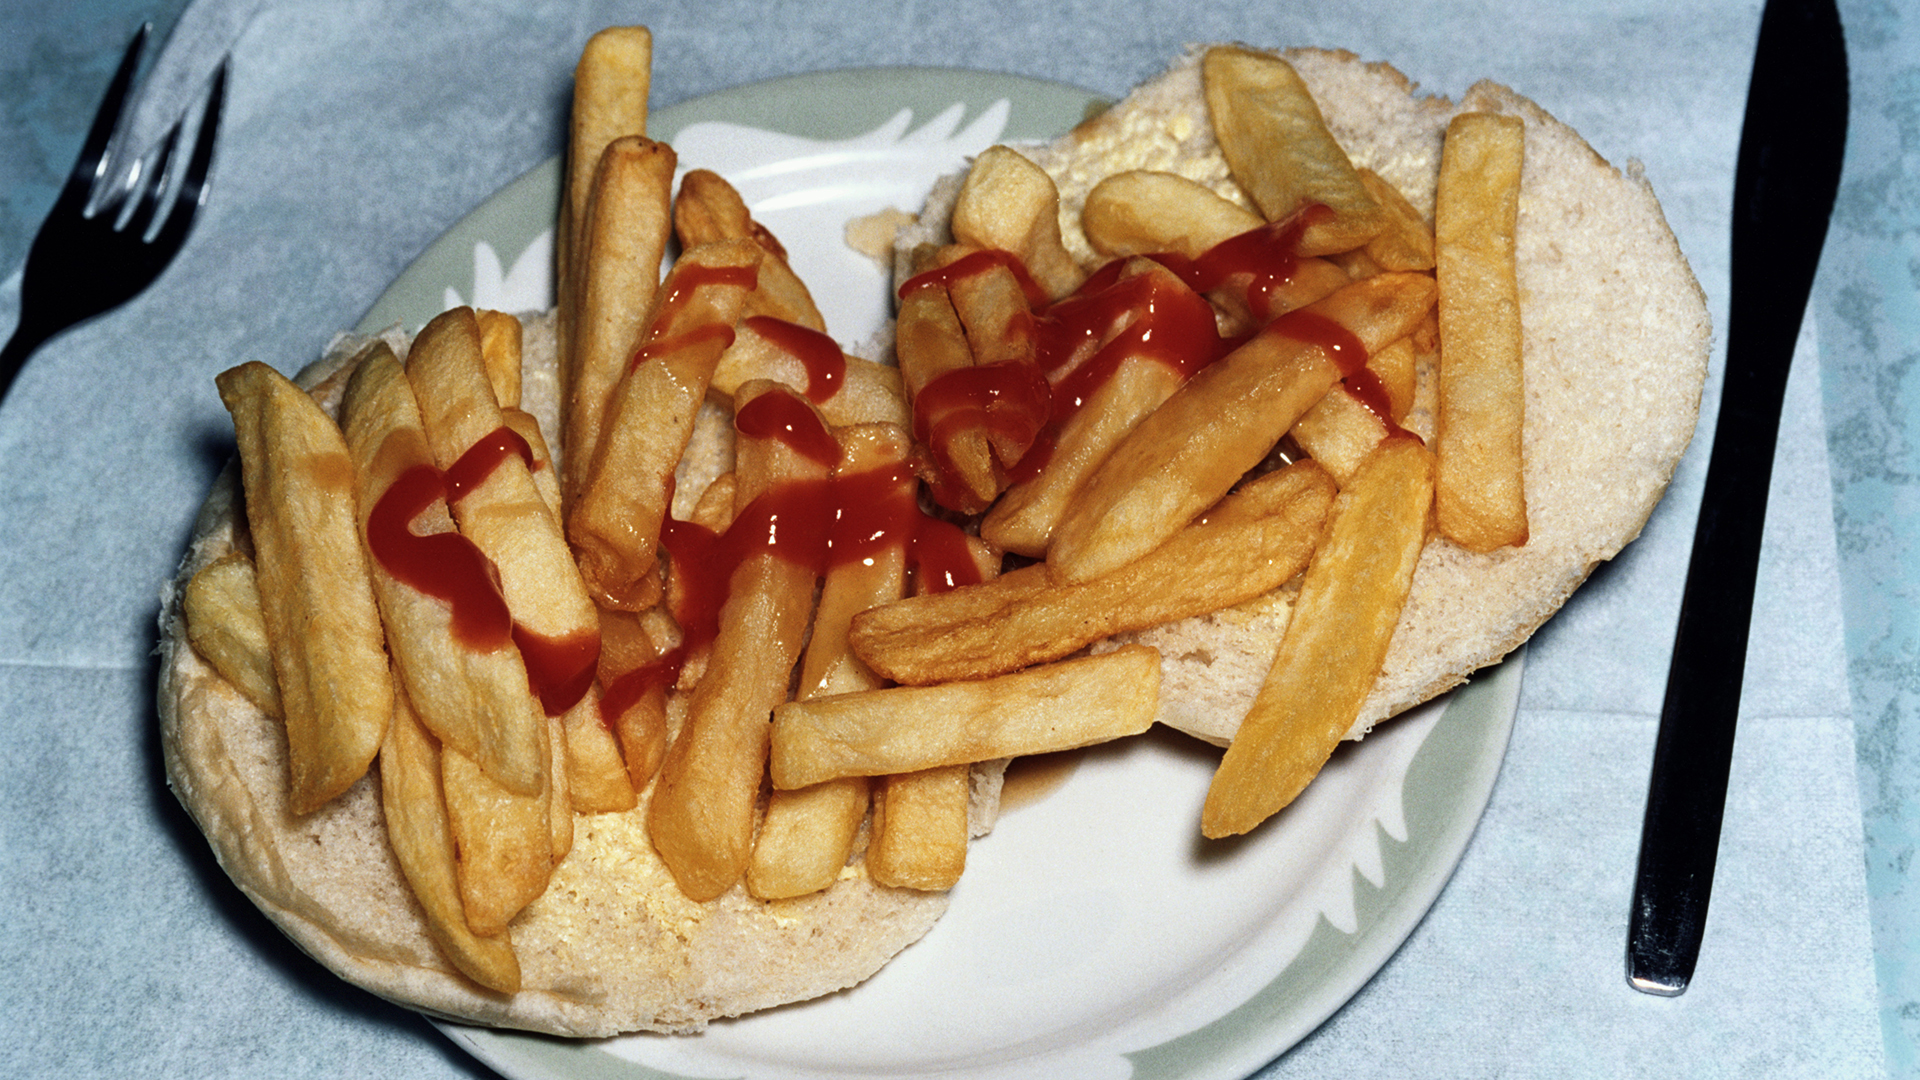 Un chip butty (denominado también chip barm, chip cob, chip sándwich) es un sándwich típico del Reino Unido, que se elabora con pan de molde (por regla general untado con mantequilla) y con papas fritas (chips) (Getty Images)